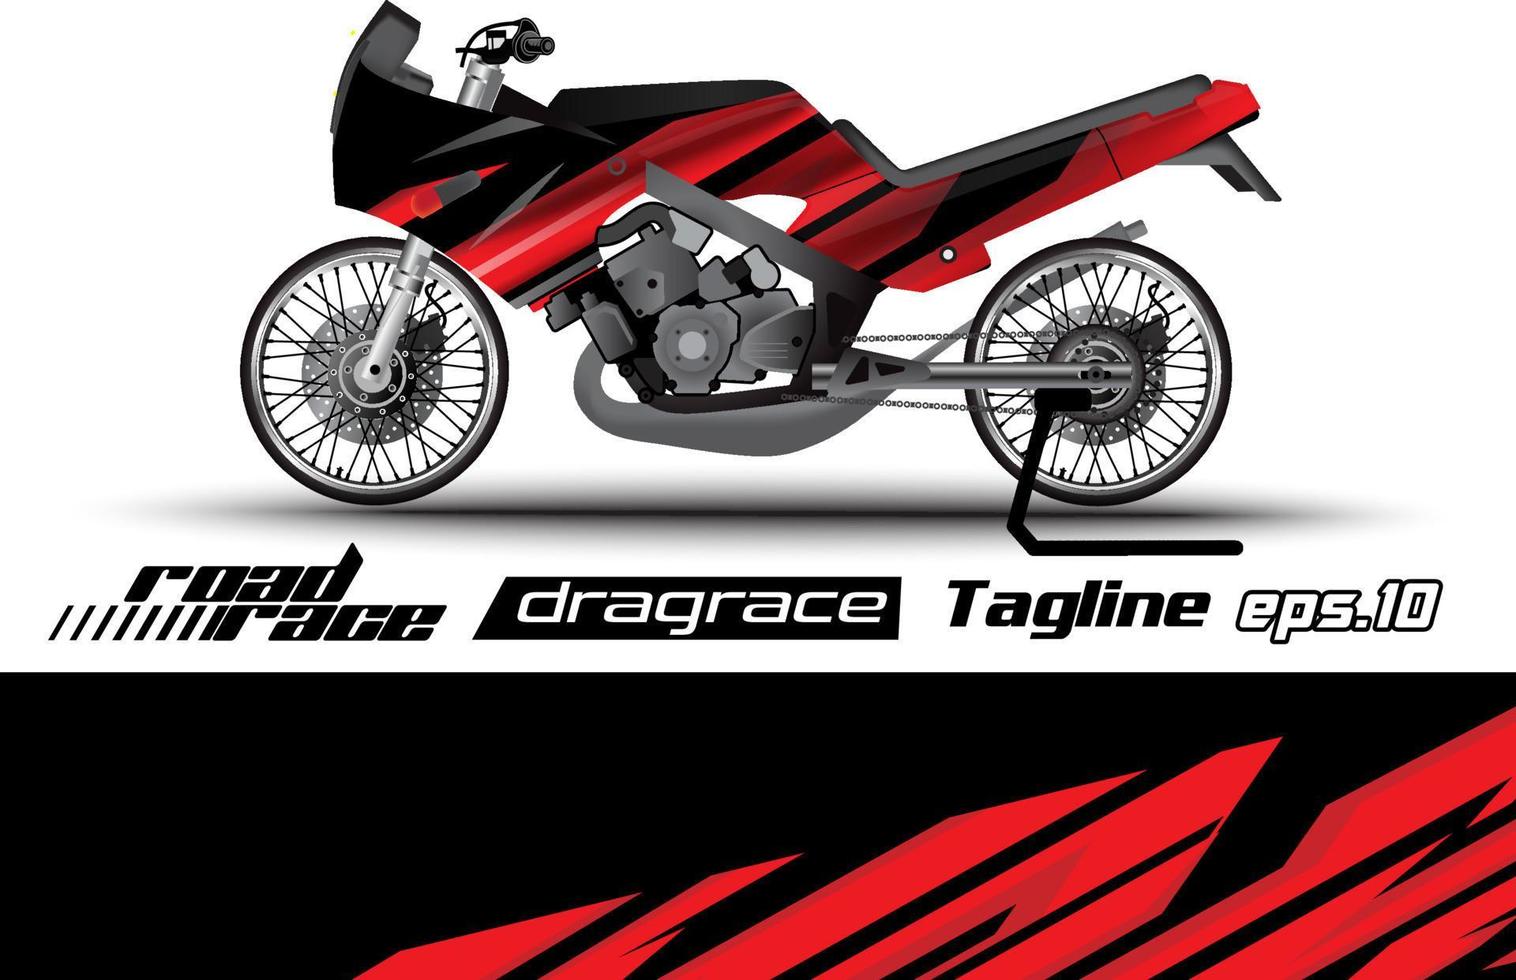 Vollvektor-Drag-Racing-Motorradaufkleber-Verpackungsdesign eps.10 vektor